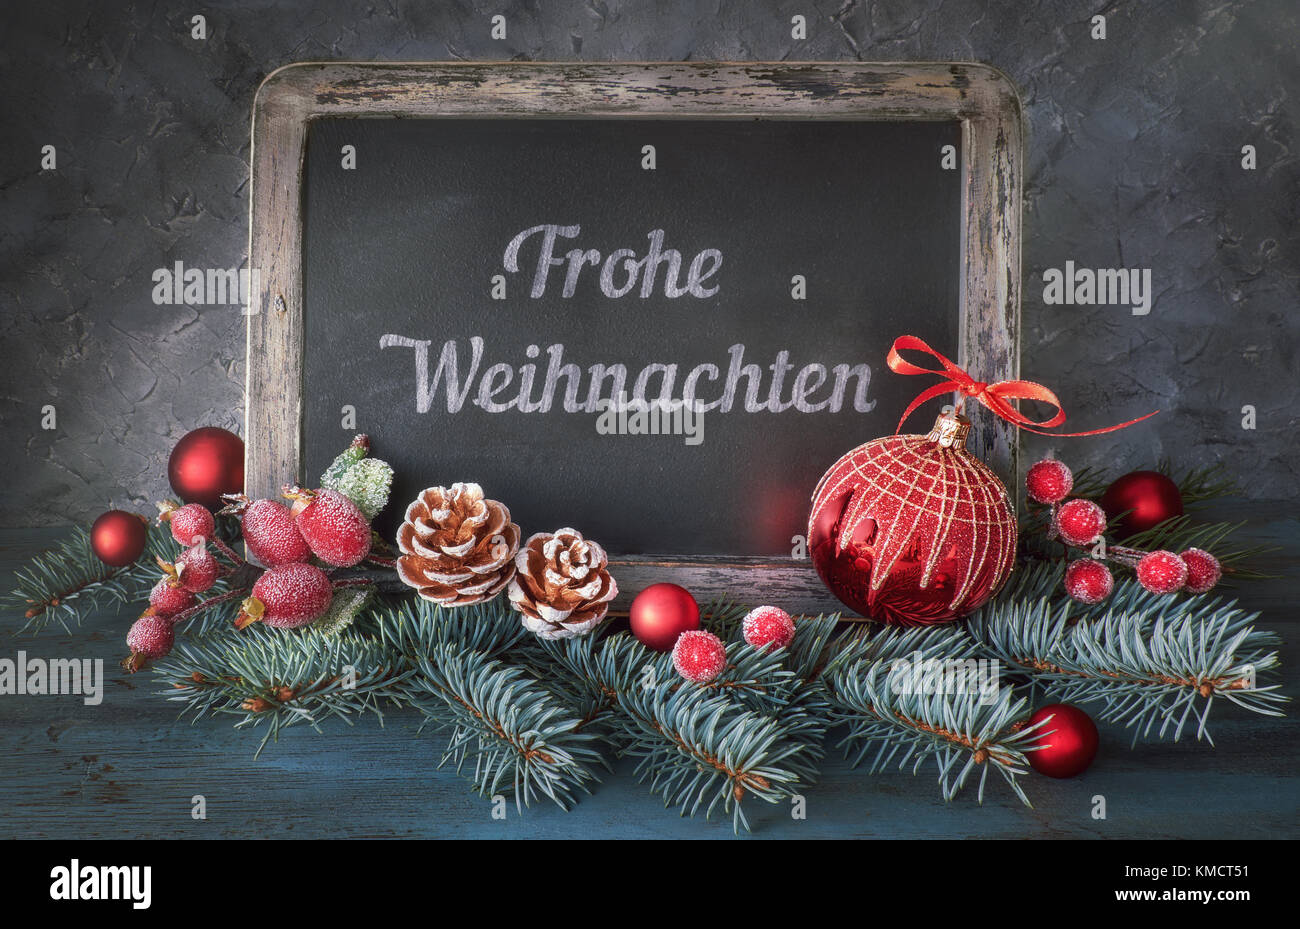 Tafel mit Gruß Text "Frohe Weihachten" oder "Frohe Weihnachten!" in  Englisch, mit Weihnachtsschmuck auf dunklen rustikalen Hintergrund. Dieses  Bild ist Stockfotografie - Alamy